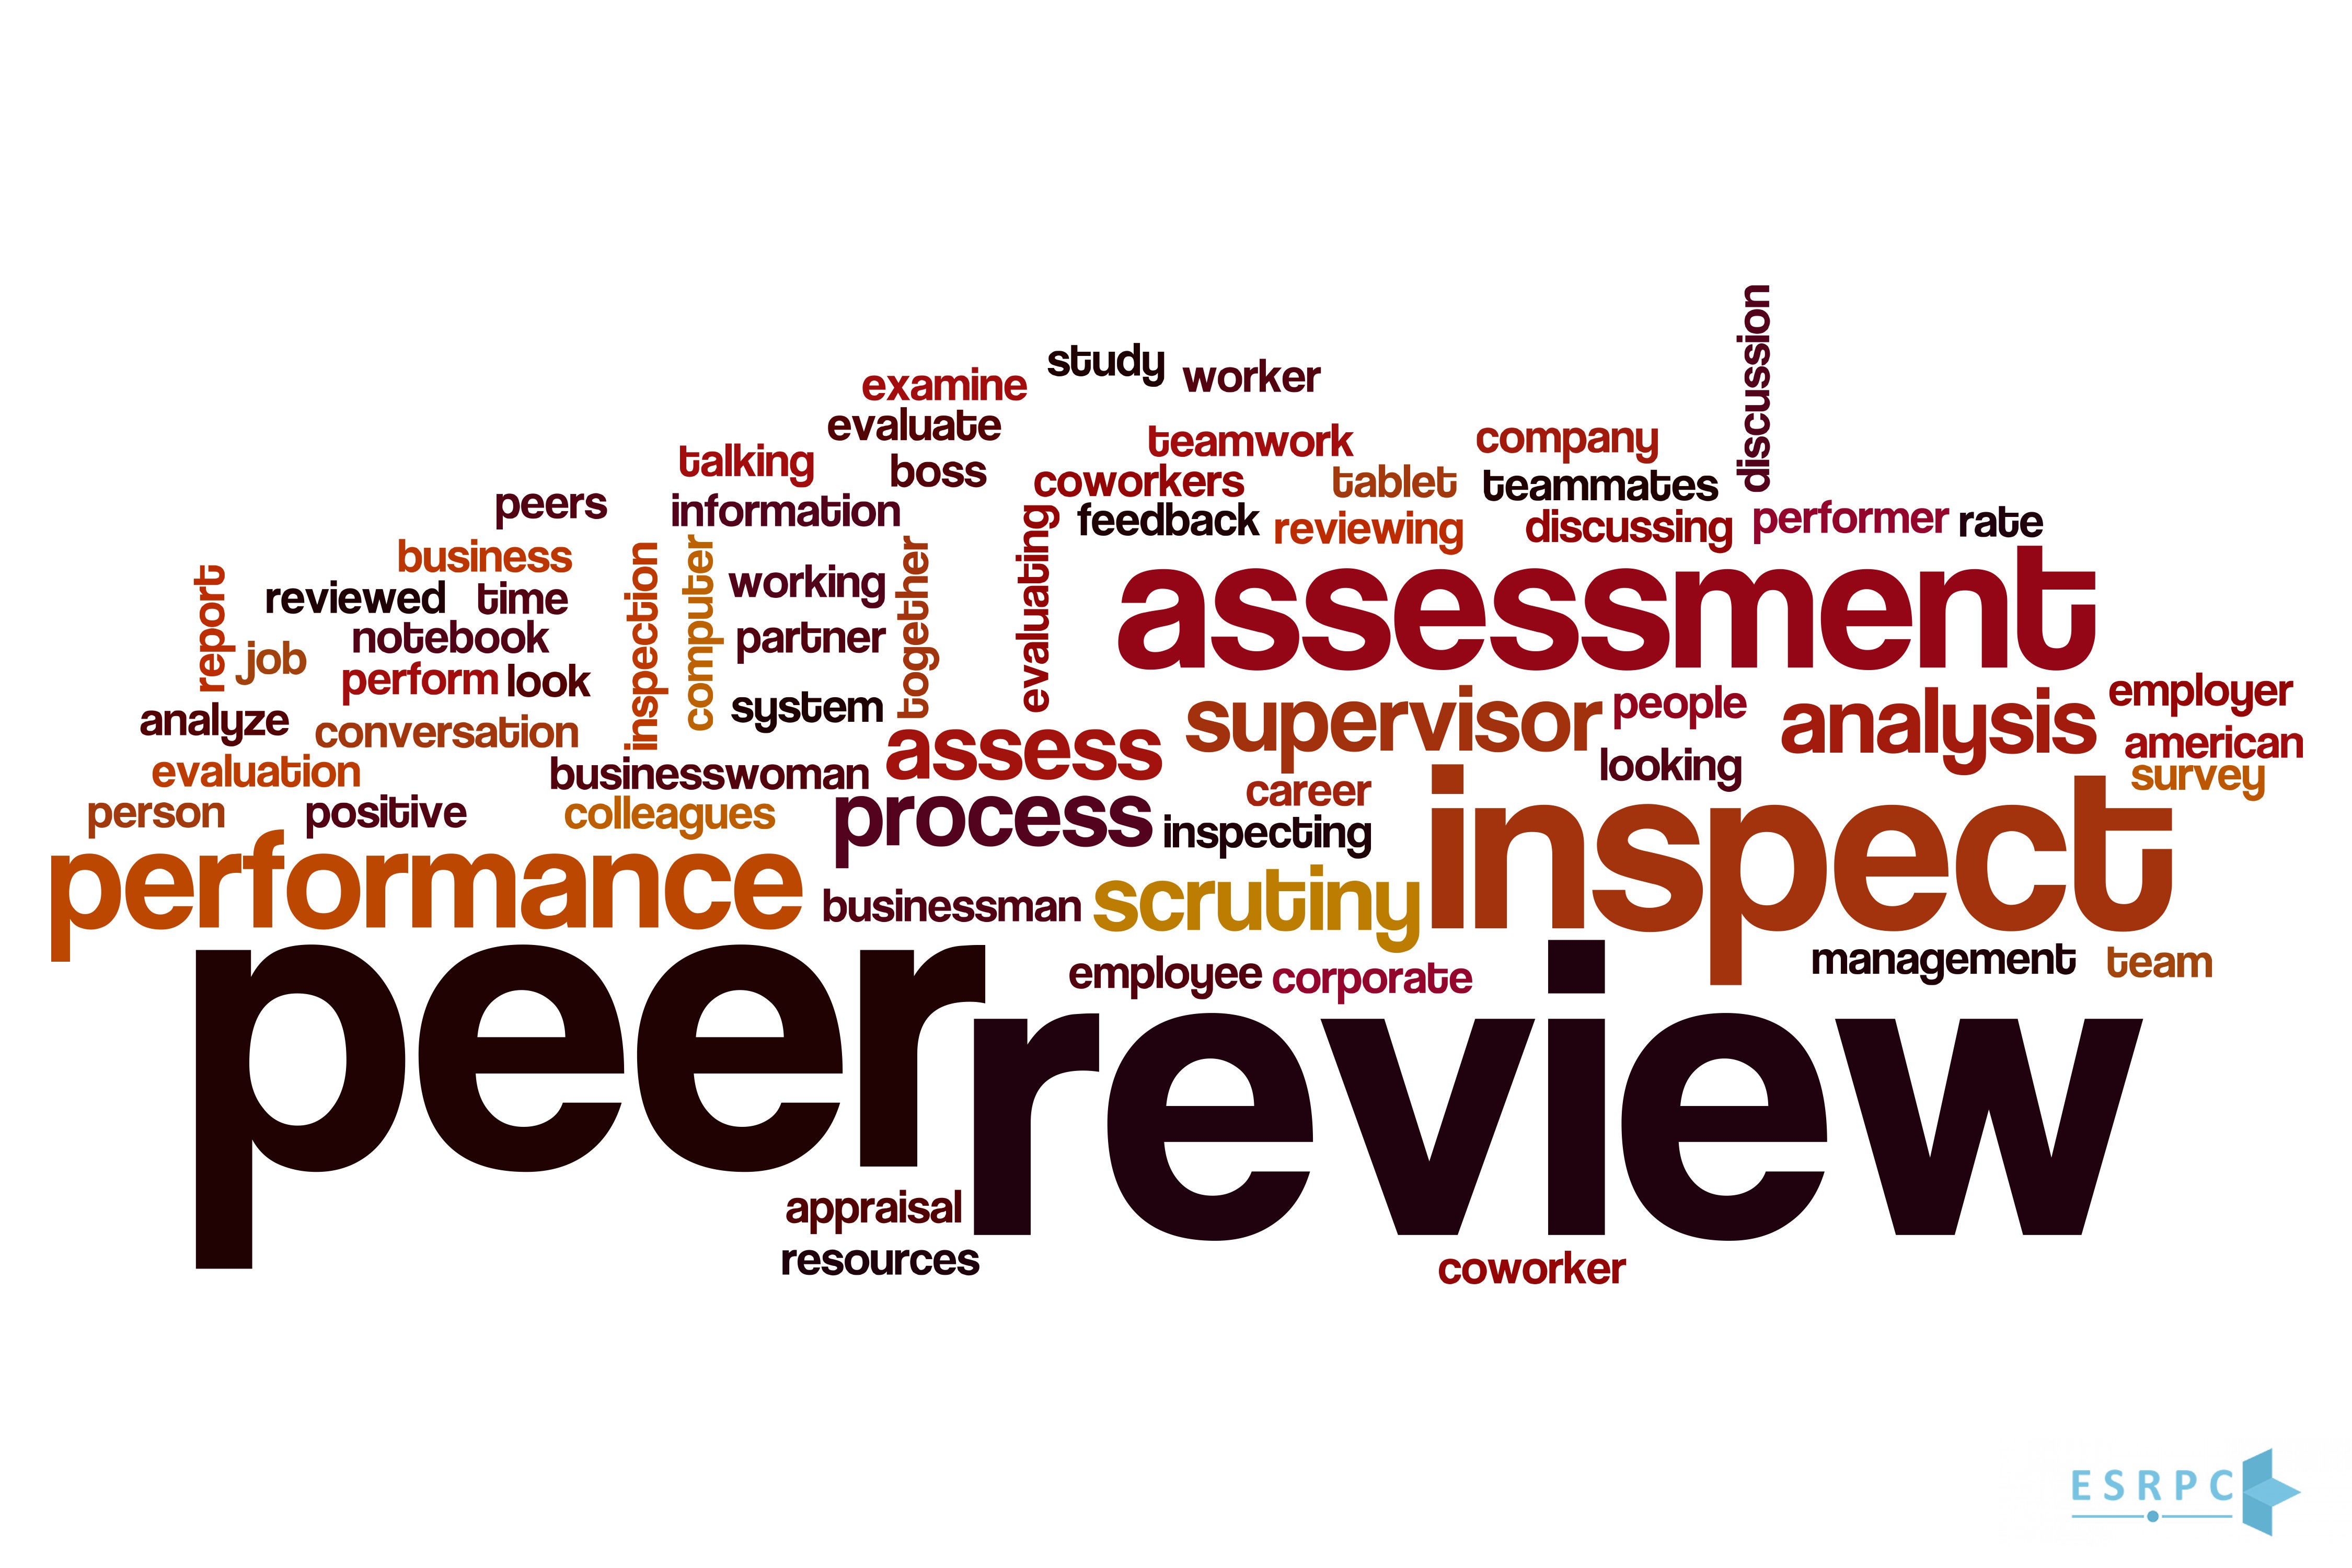 مراجعة الأقران (Peer Review)